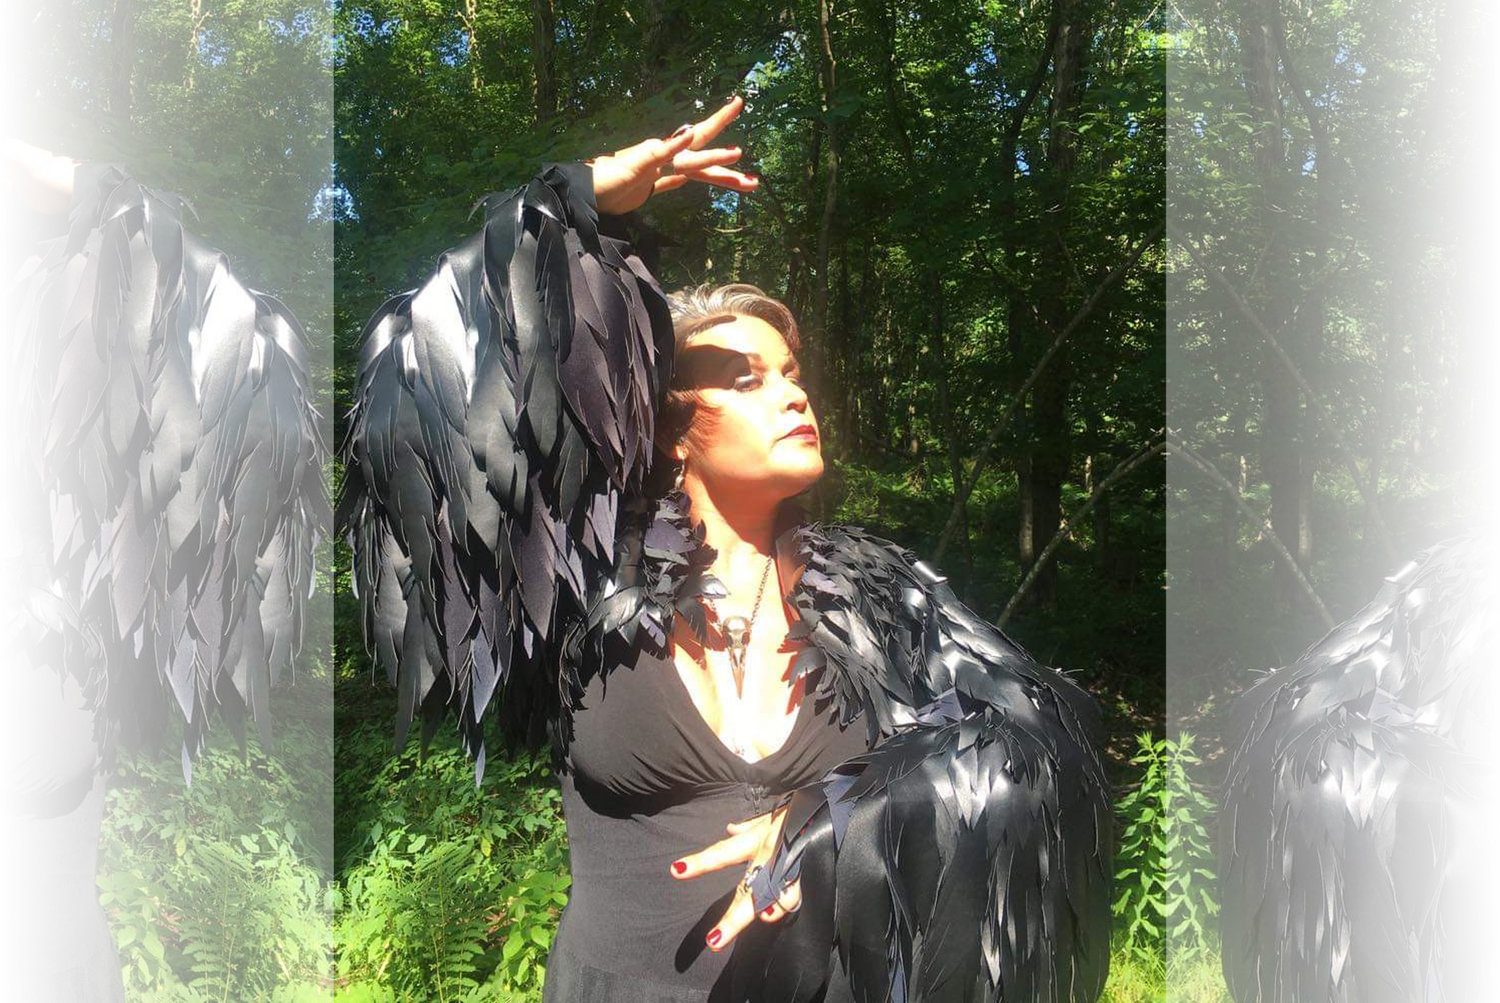 Harper Della-Piana hand crafted this raven-inspired bolero